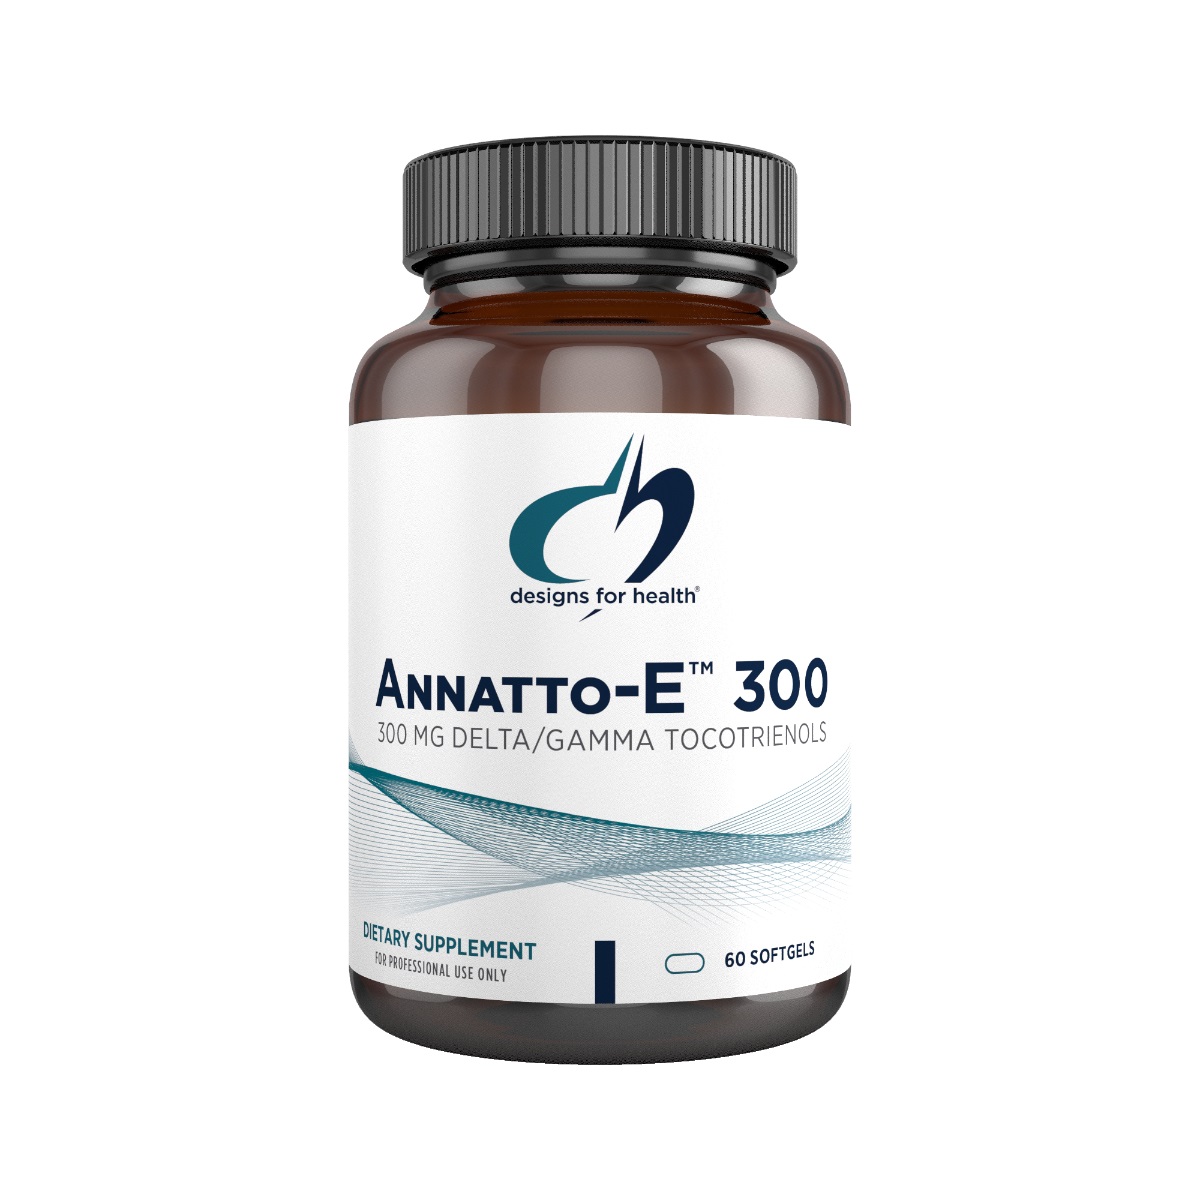 Annatto-E 300 - Designs for Health